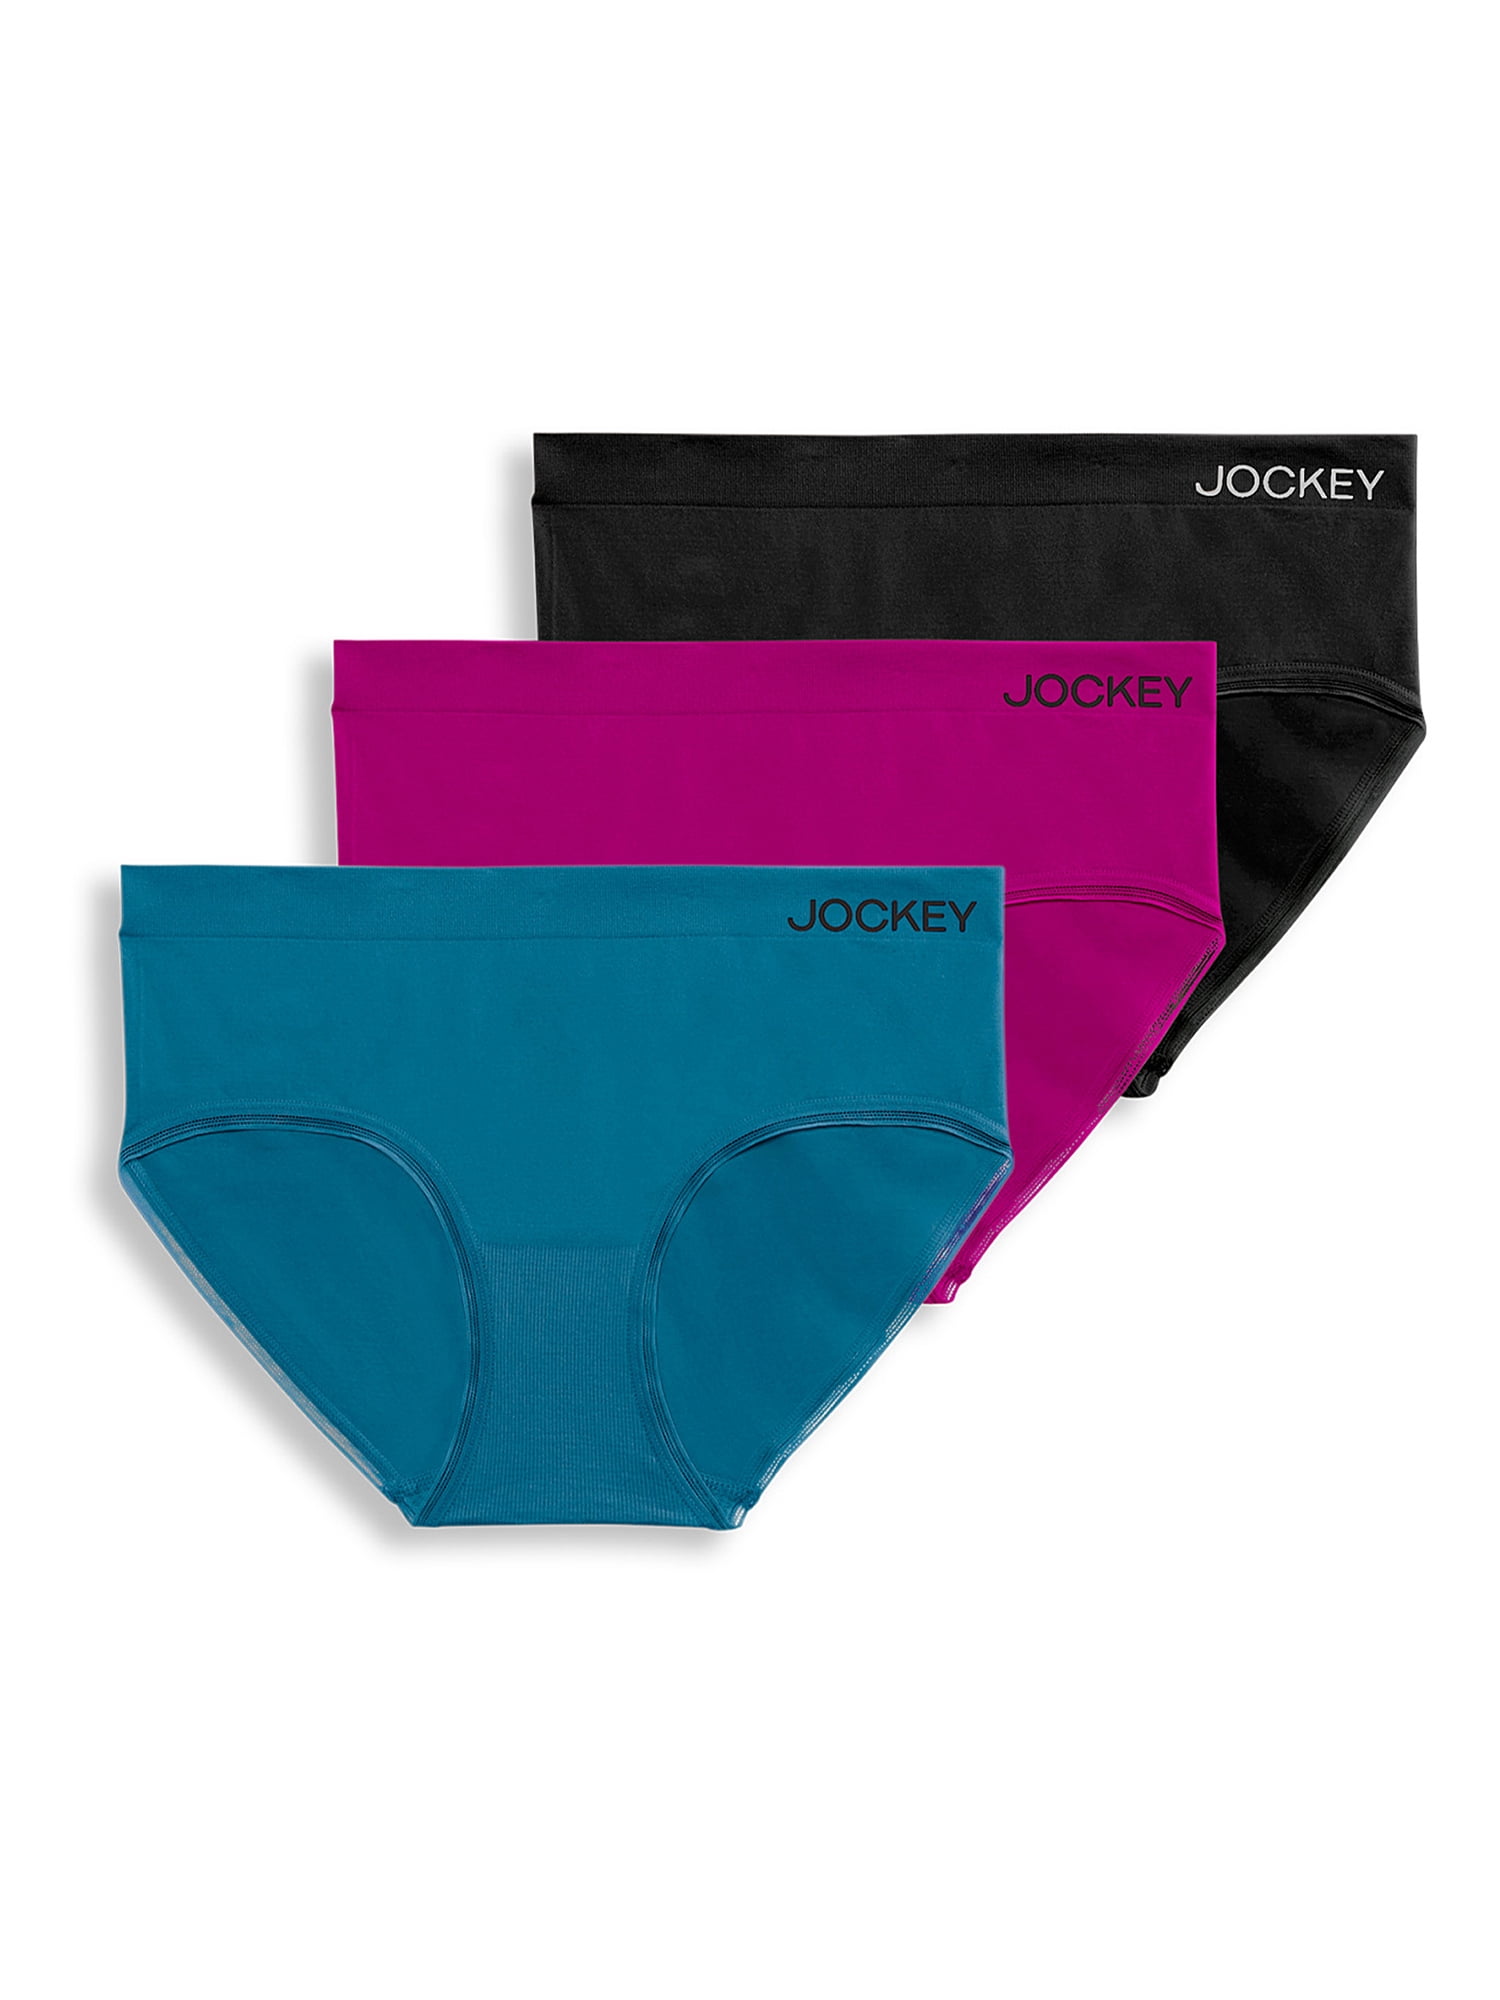 5-pack Jockey Ladies' Custom Underwear Women's Panties Hipster